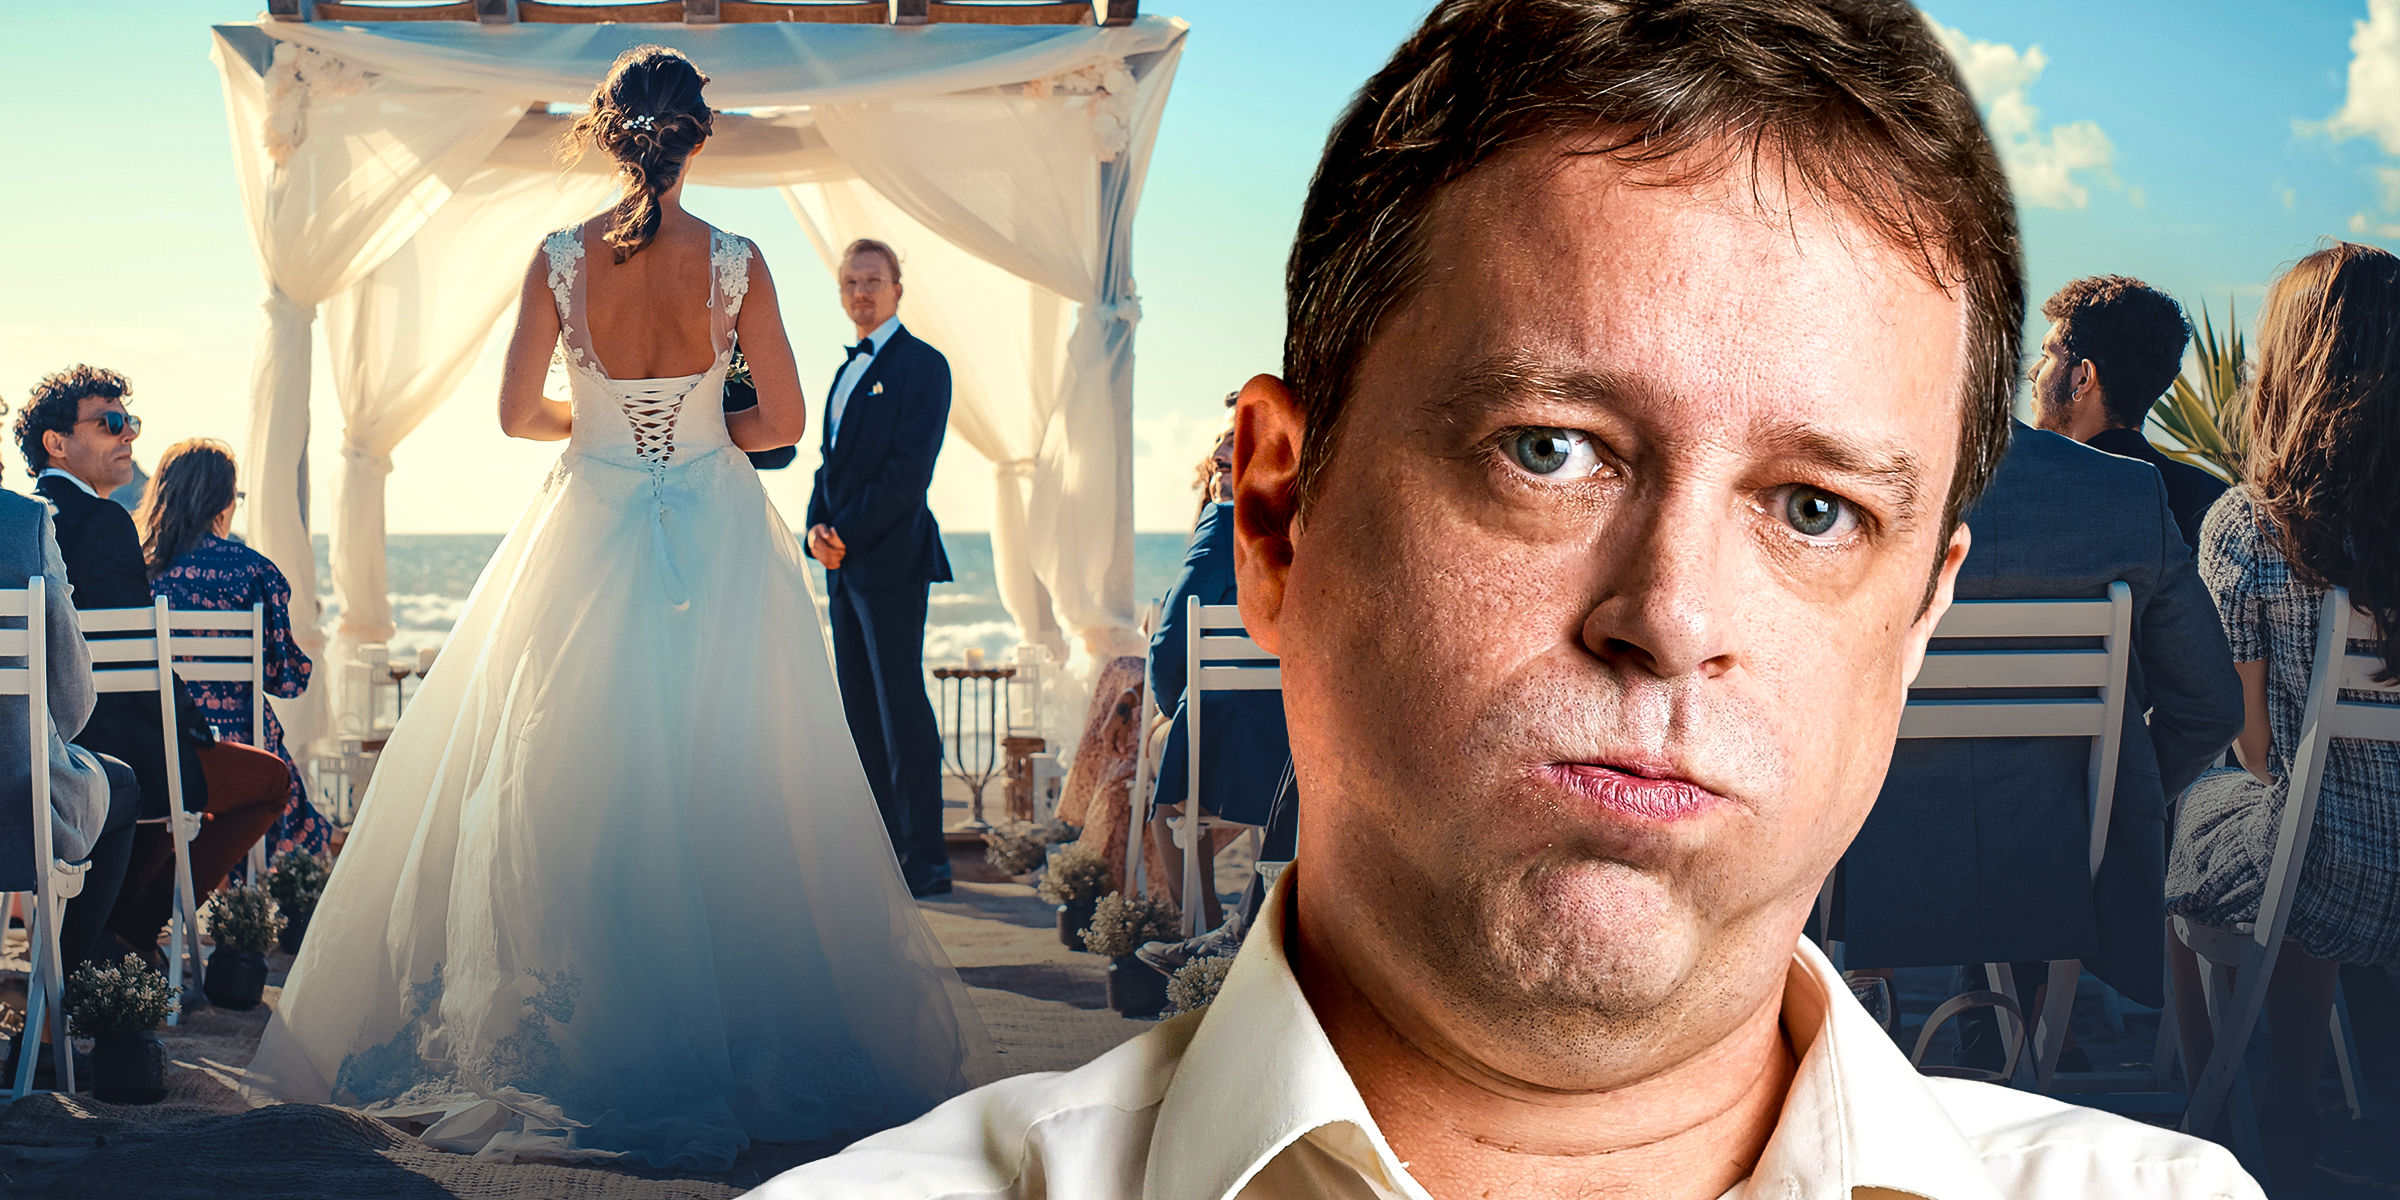 Hombre insatisfecho en una boda | Fuente: Shutterstock